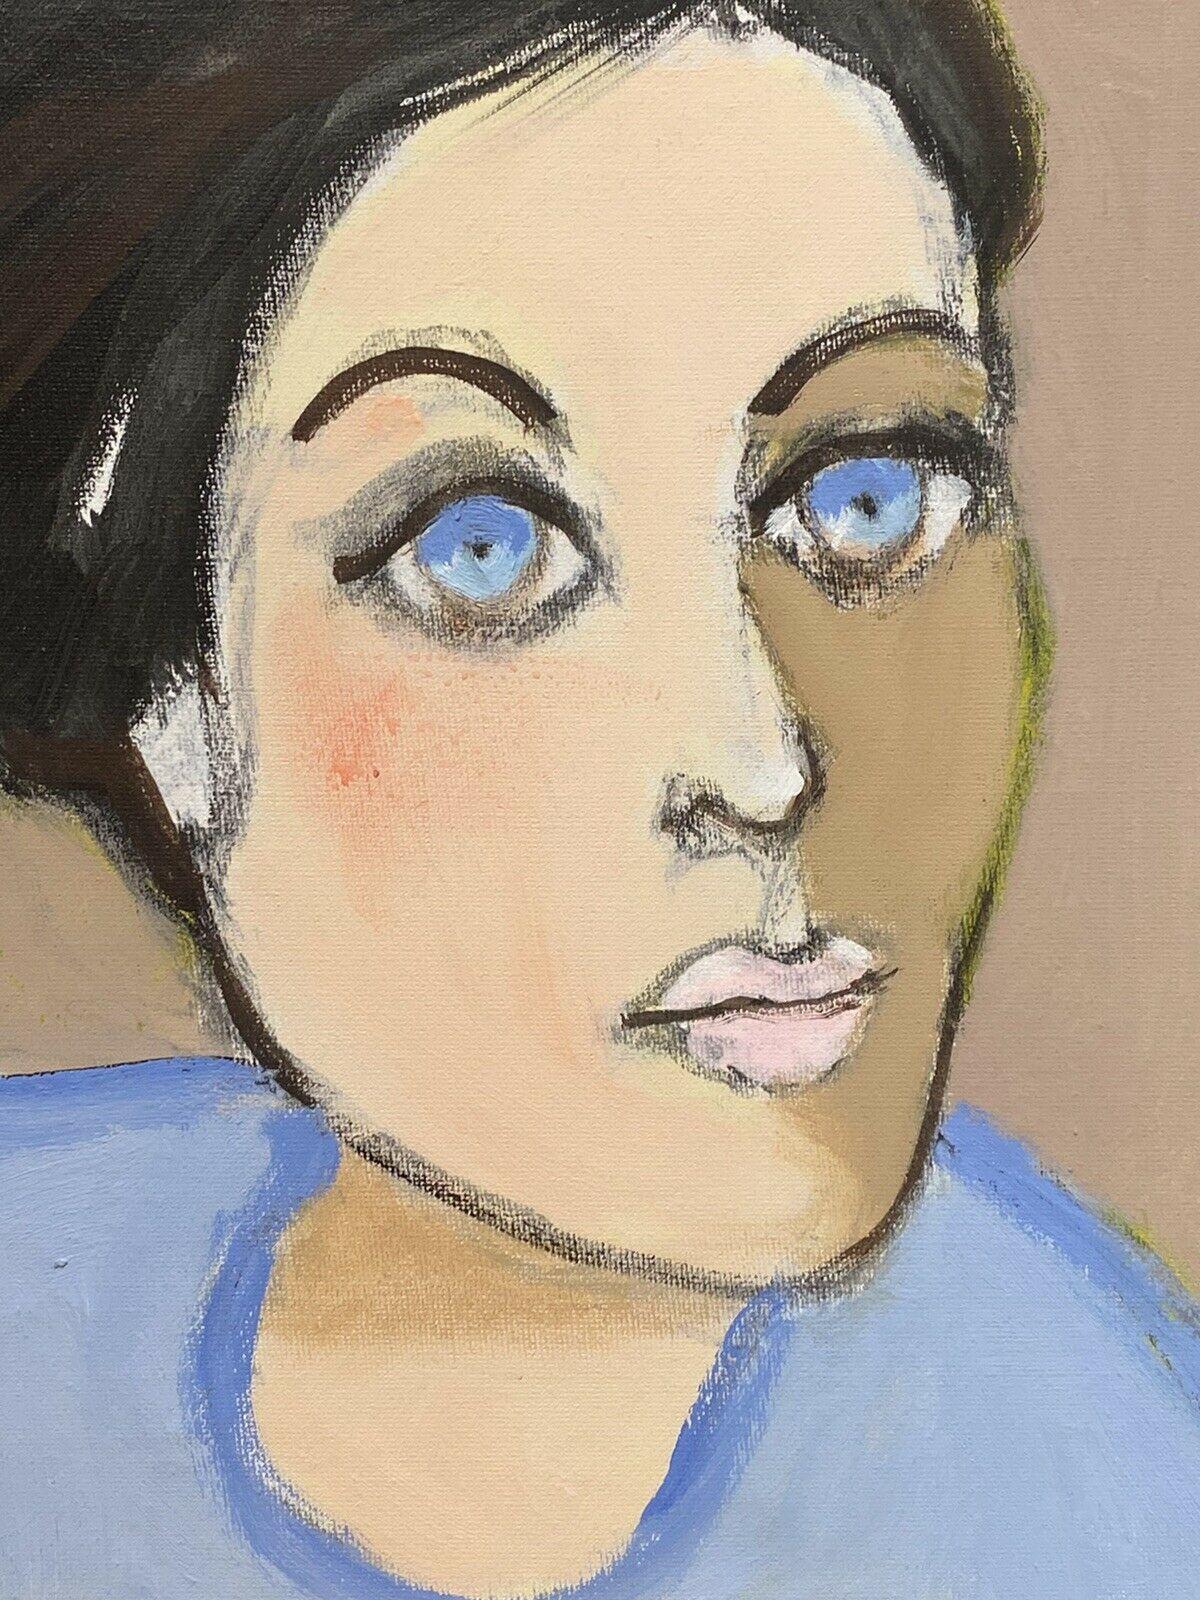 Künstler/Schule: Rene Leroy (Franzose, geb. 1932)

Titel: Modernistisches Porträt einer Frau

Medium: Ölgemälde auf Leinwand

Größe: Gemälde: 11.5 x 10,5 Zoll

Provenienz: Alle Gemälde, die wir von diesem Künstler zum Verkauf anbieten,